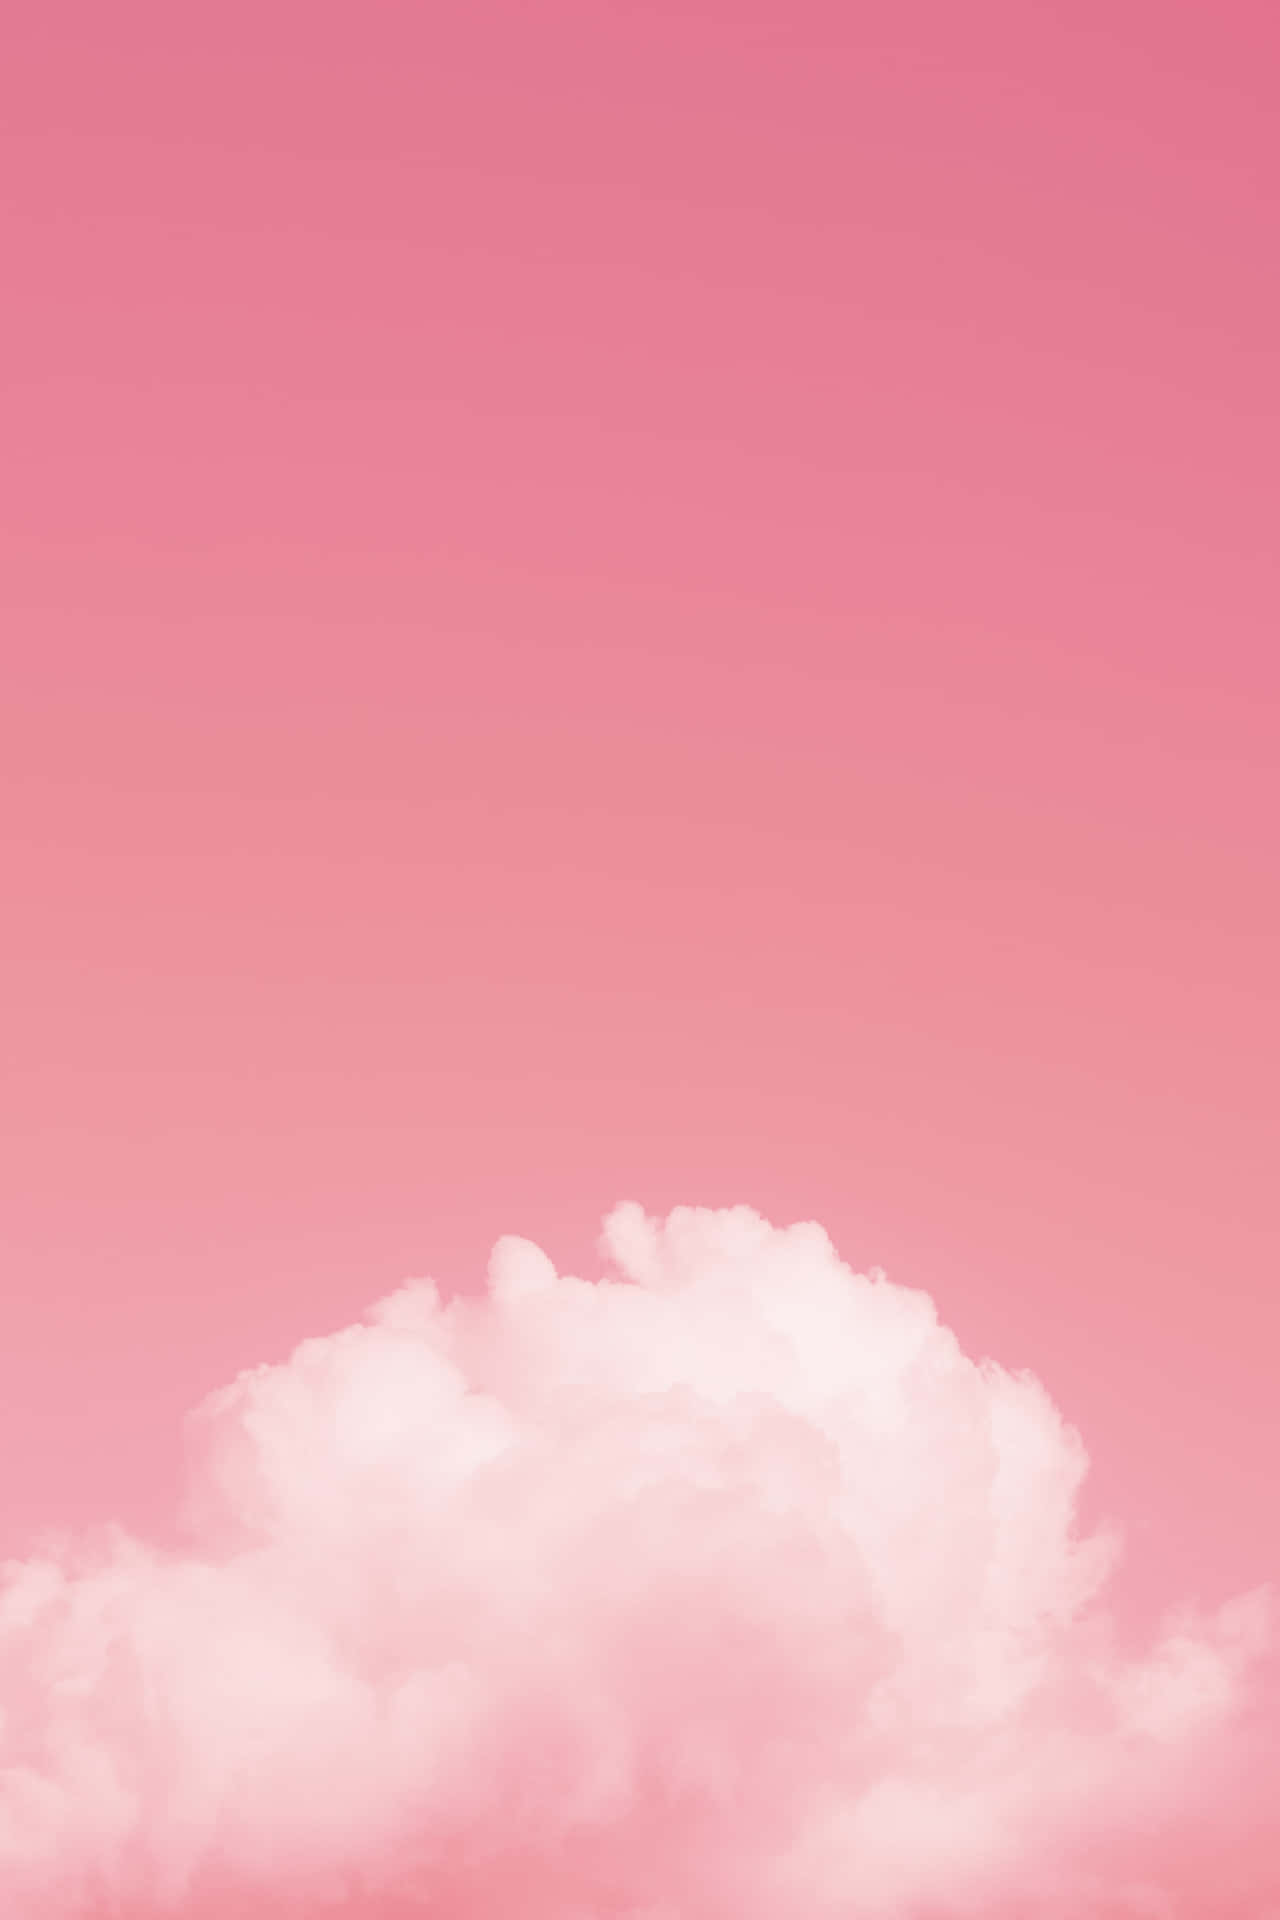 Sunshiney blushing pink background